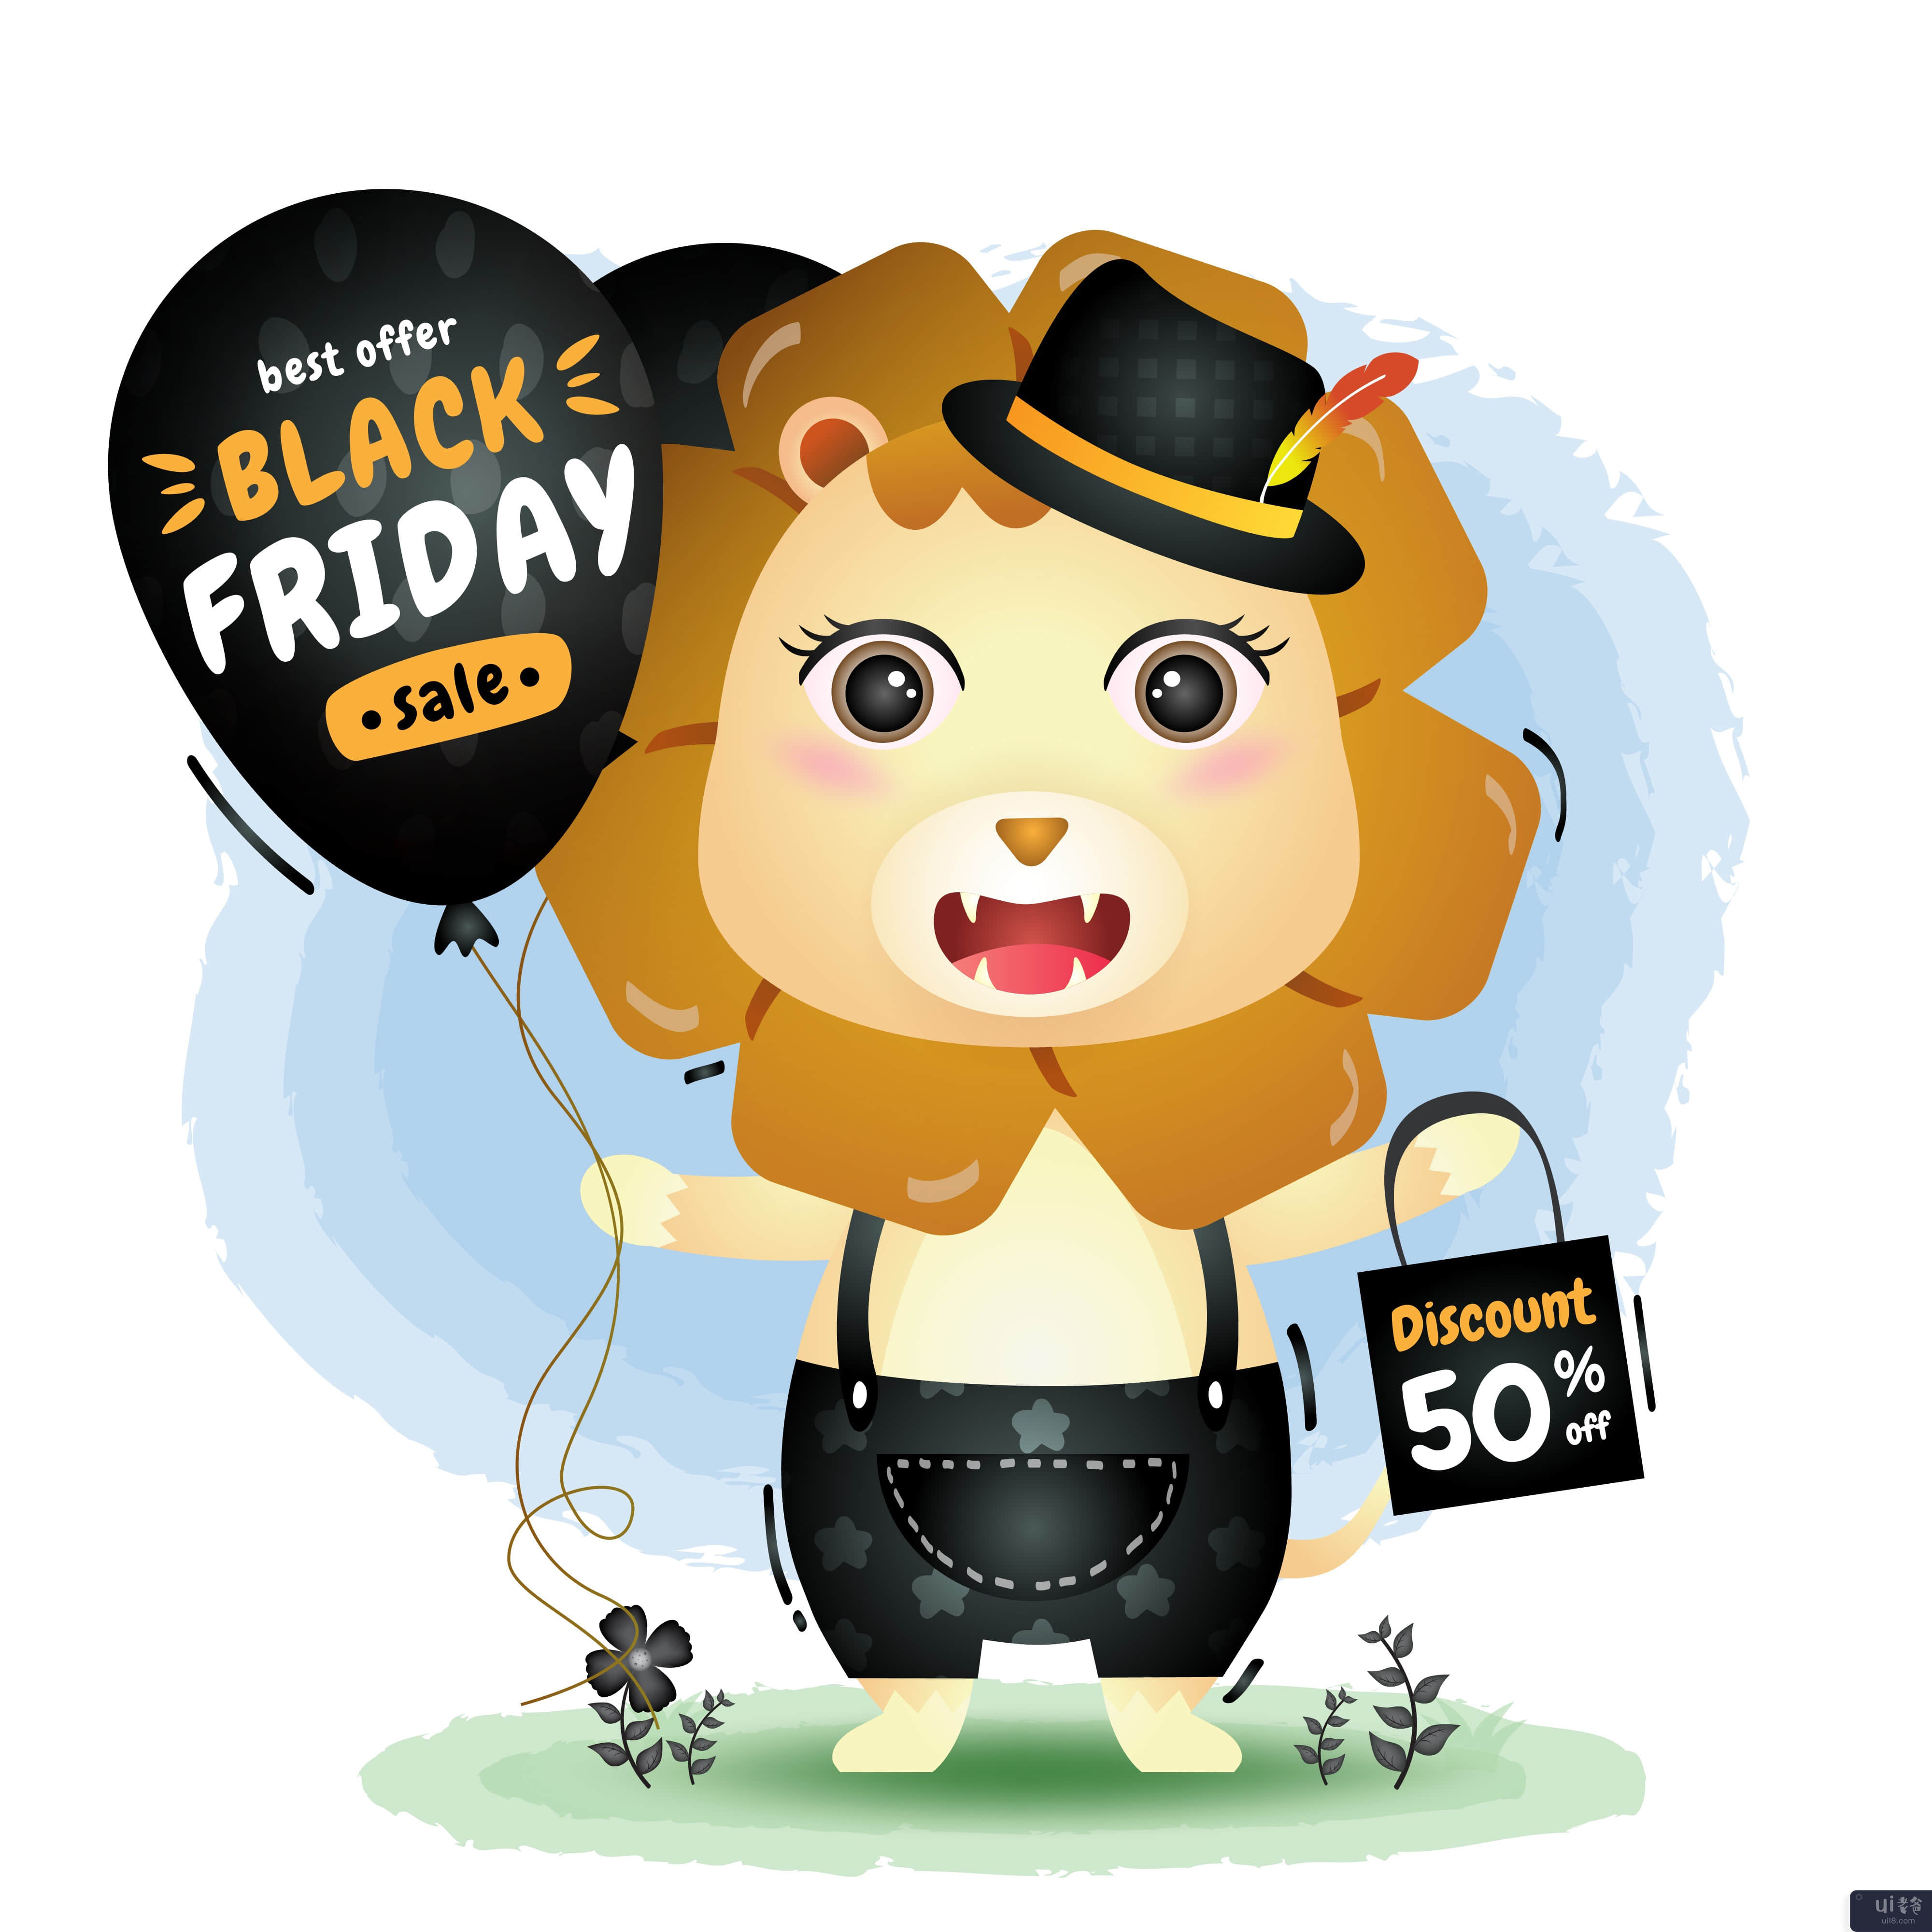 黑色星期五促销活动，带有可爱的狮子气球促销(Black friday sale with a cute lion hold balloon promotion)插图2